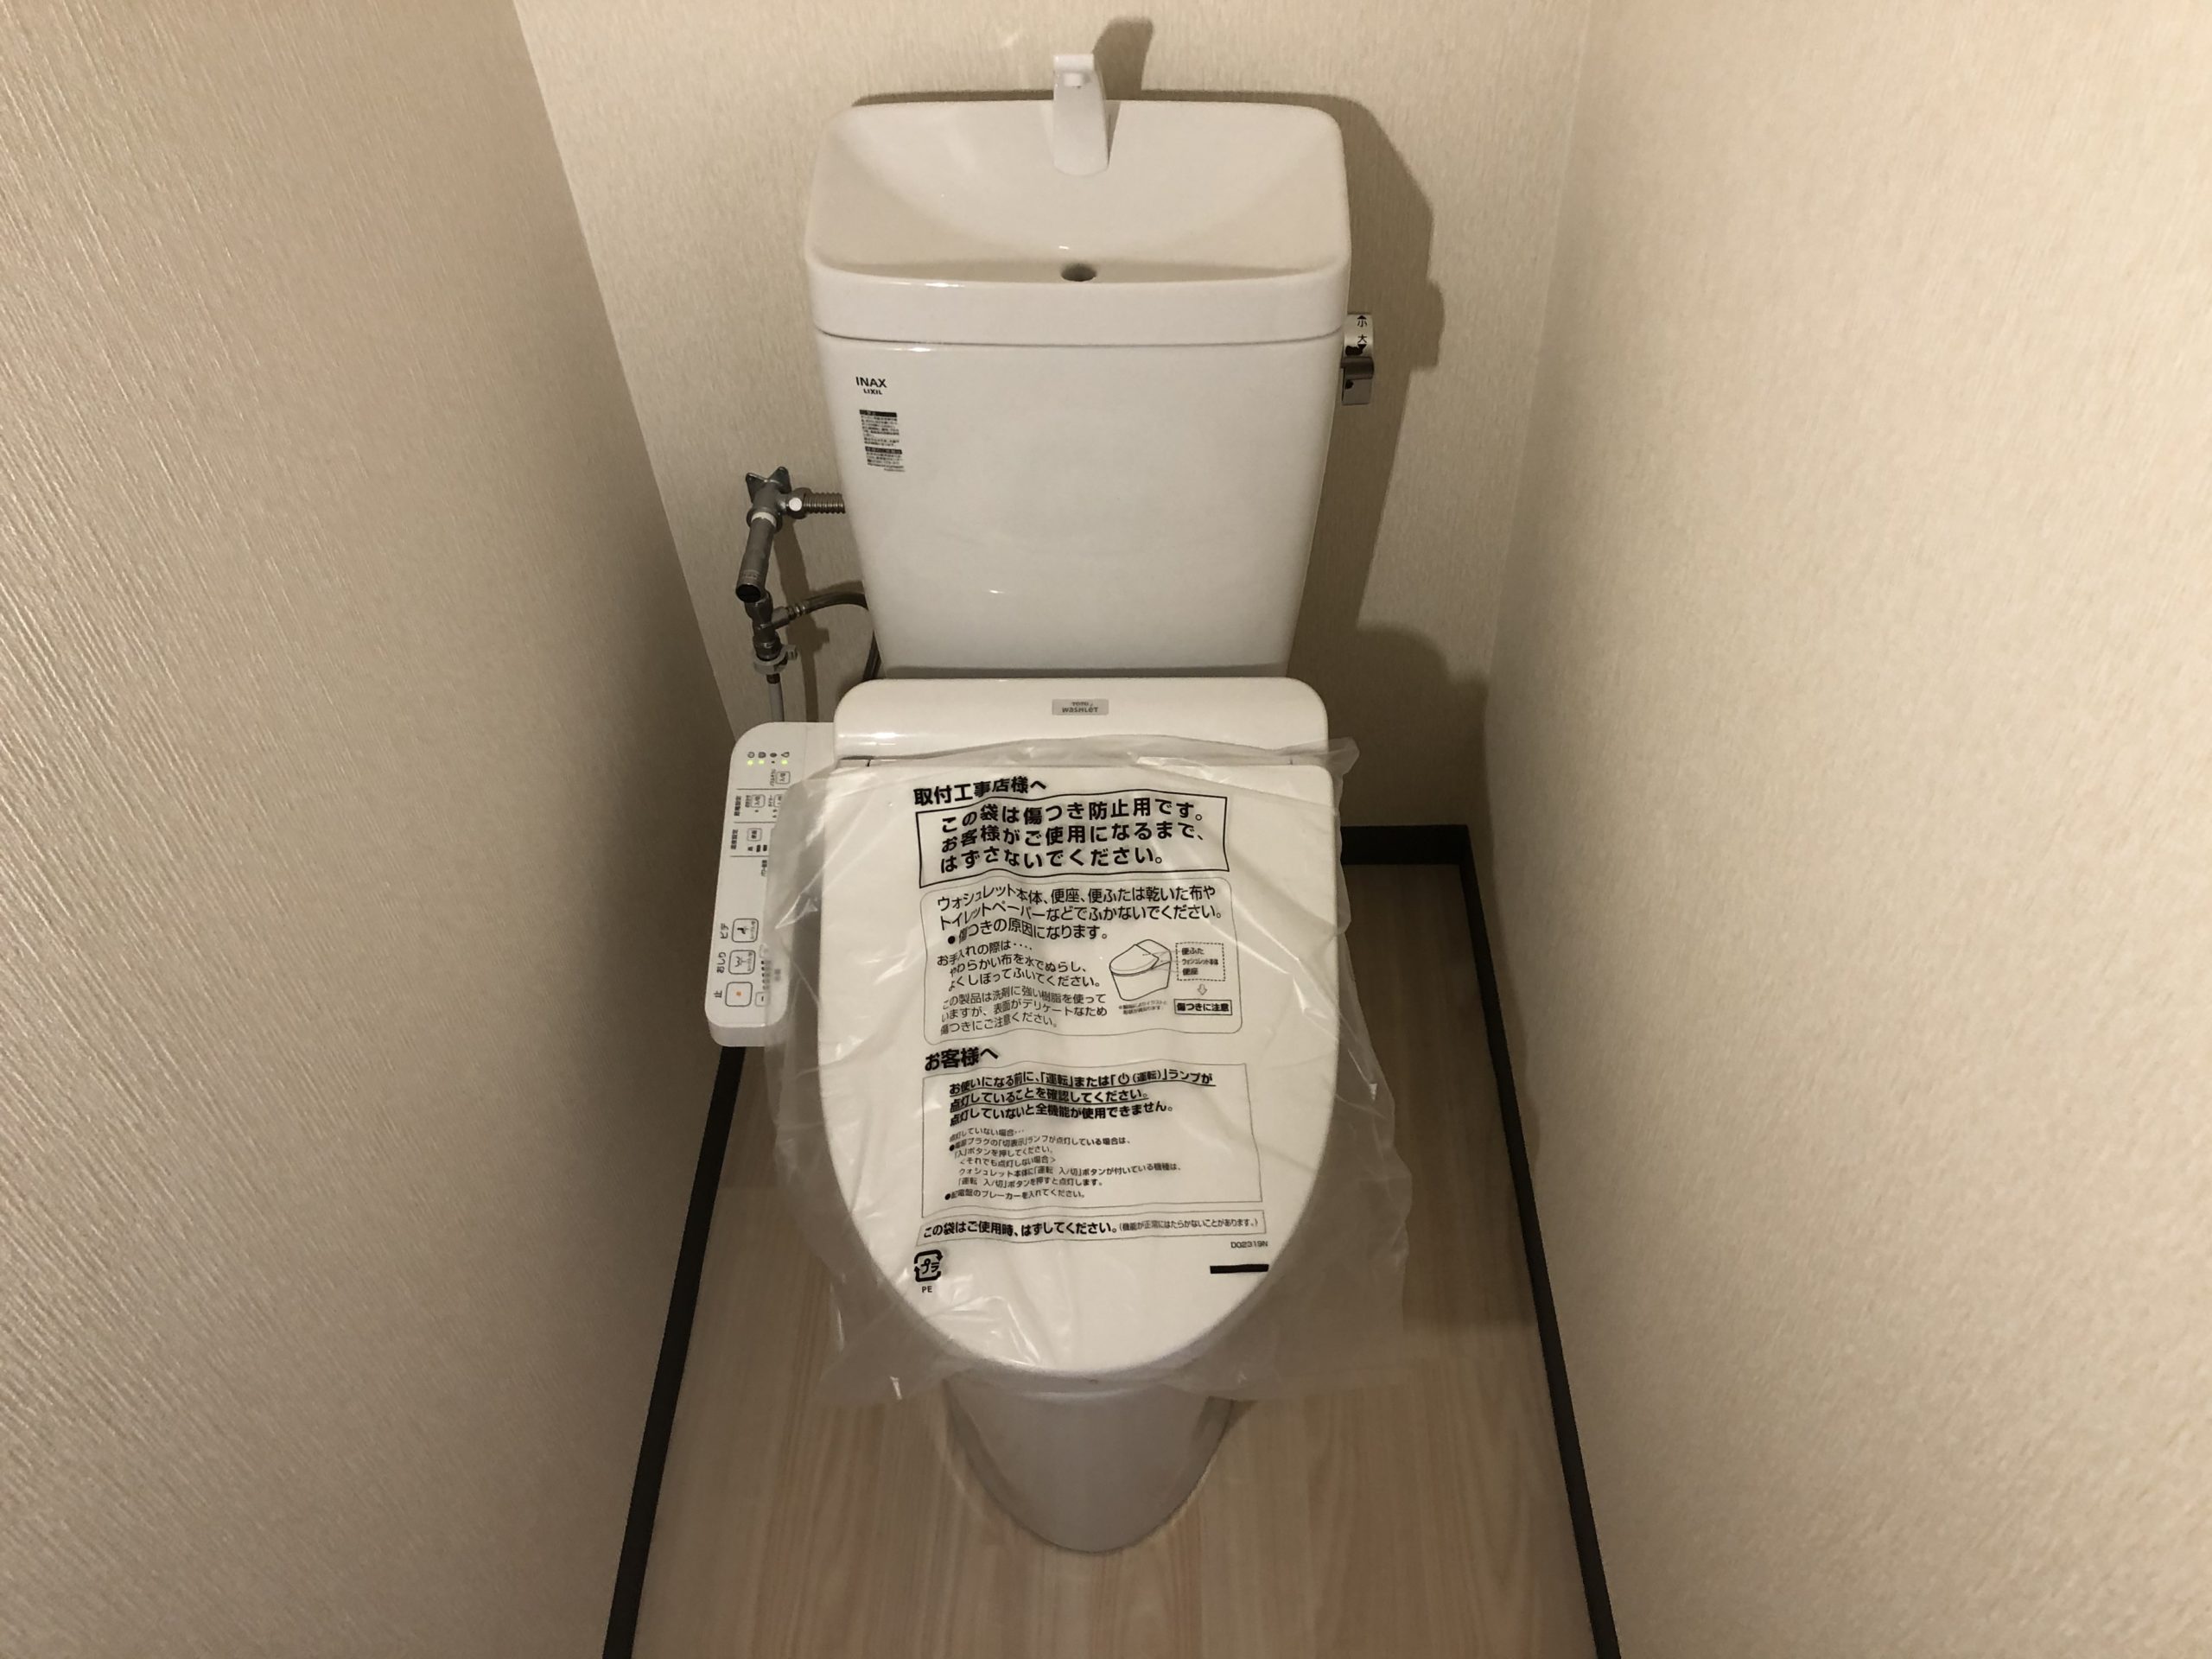 大阪市阿倍野区　会社事務所内の洋式トイレ取替リフォーム工事